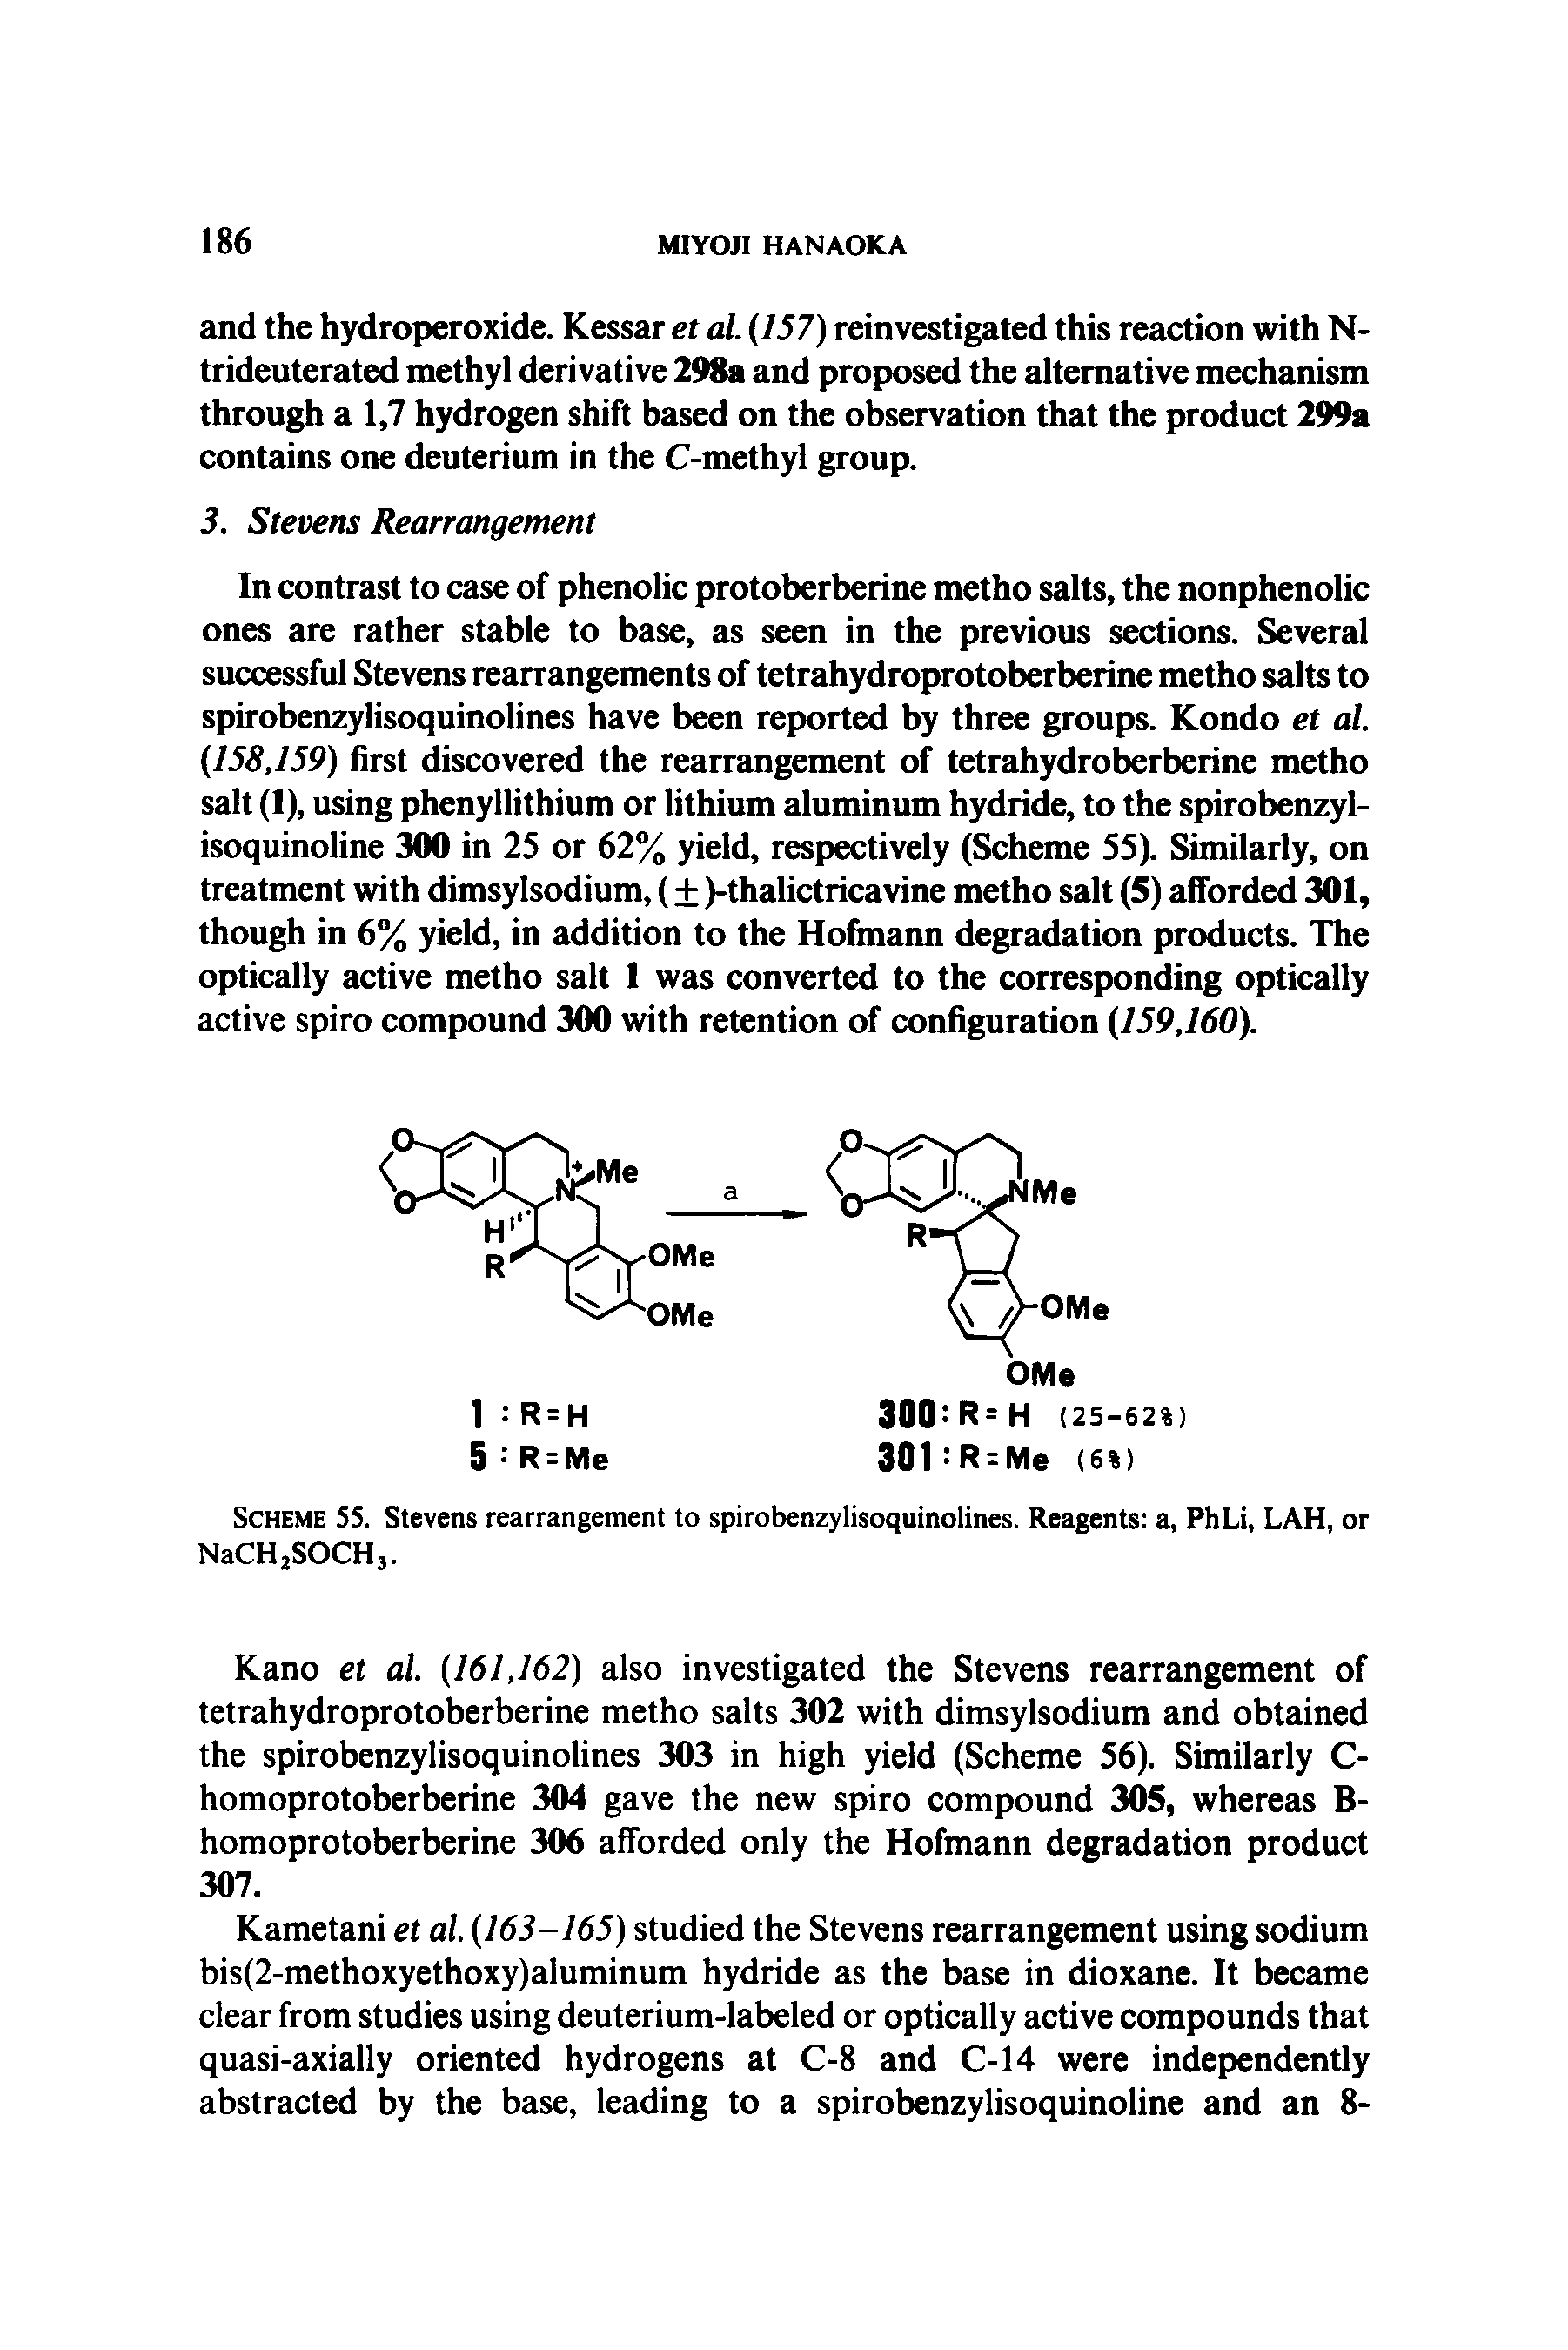 Scheme 55. Stevens rearrangement to spirobenzylisoquinolines. Reagents a, PhLi, LAH, or NaCH2SOCH3.